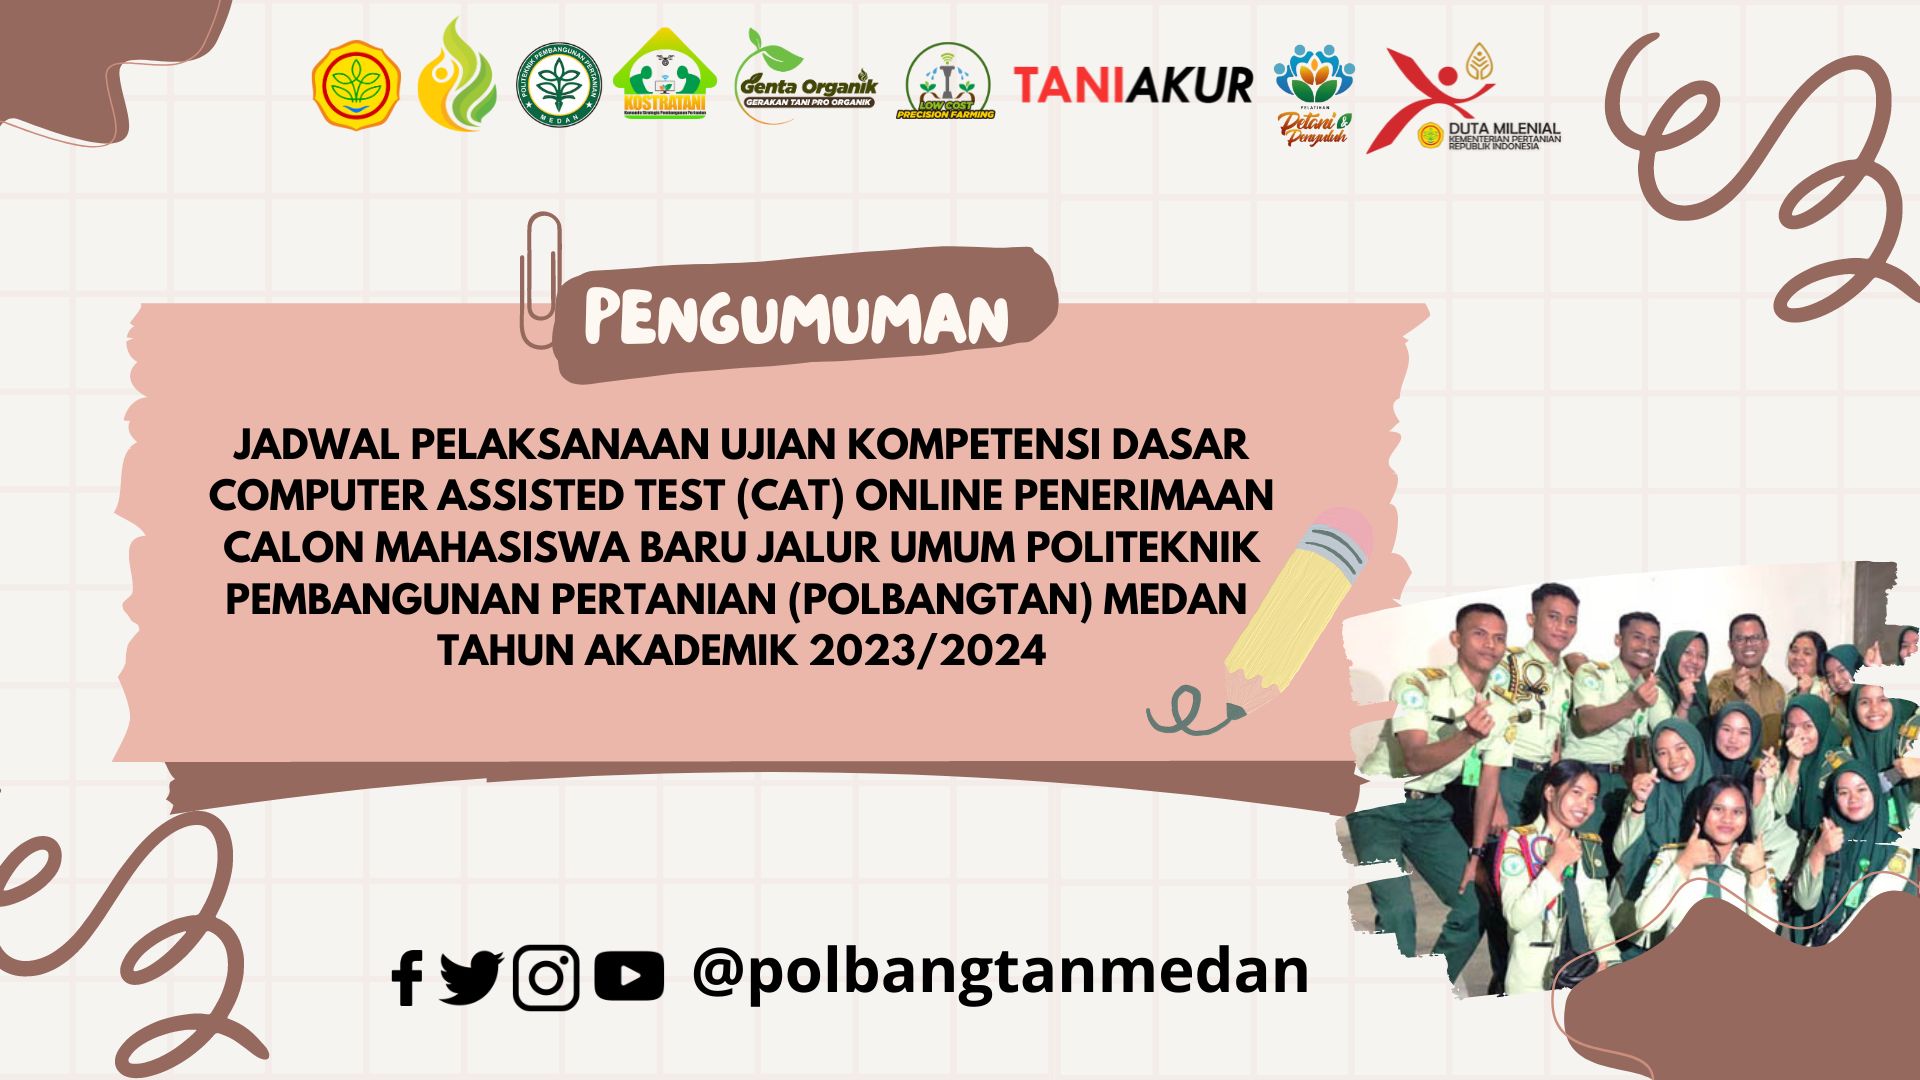 JADWAL PELAKSANAAN UJIAN KOMPETENSI DASAR COMPUTER ASSISTED TEST (CAT) ONLINE PENERIMAAN CALON MAHASISWA BARU JALUR UMUM POLITEKNIK PEMBANGUNAN PERTANIAN (POLBANGTAN) MEDAN TAHUN AKADEMIK 2023/2024